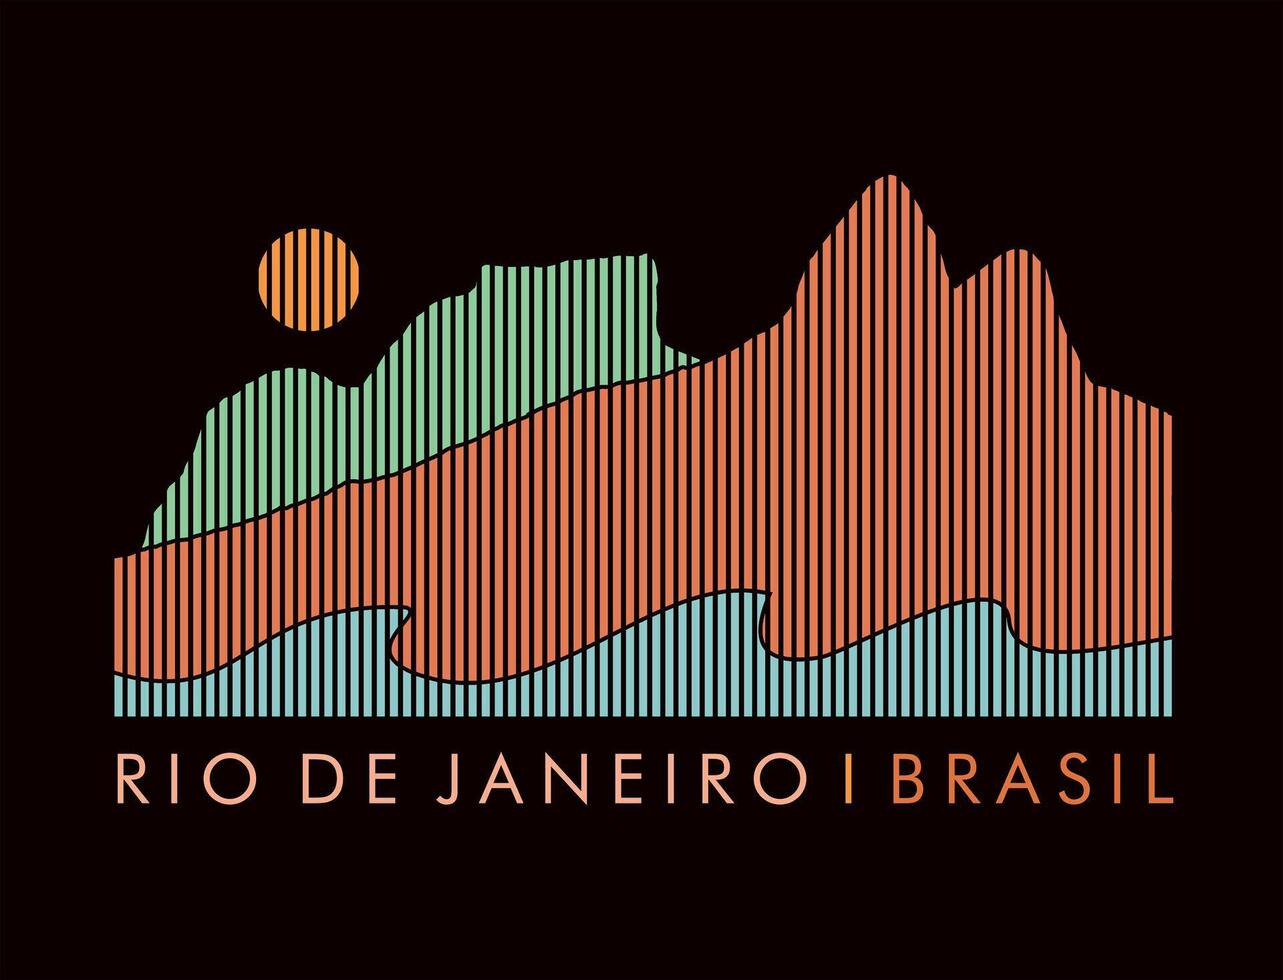 Vektor Illustration von bunt Silhouetten von Berge im das Küsten Region von Rio de Janeiro. Kunst im Grafik Stil gebildet durch Vertikale Streifen.